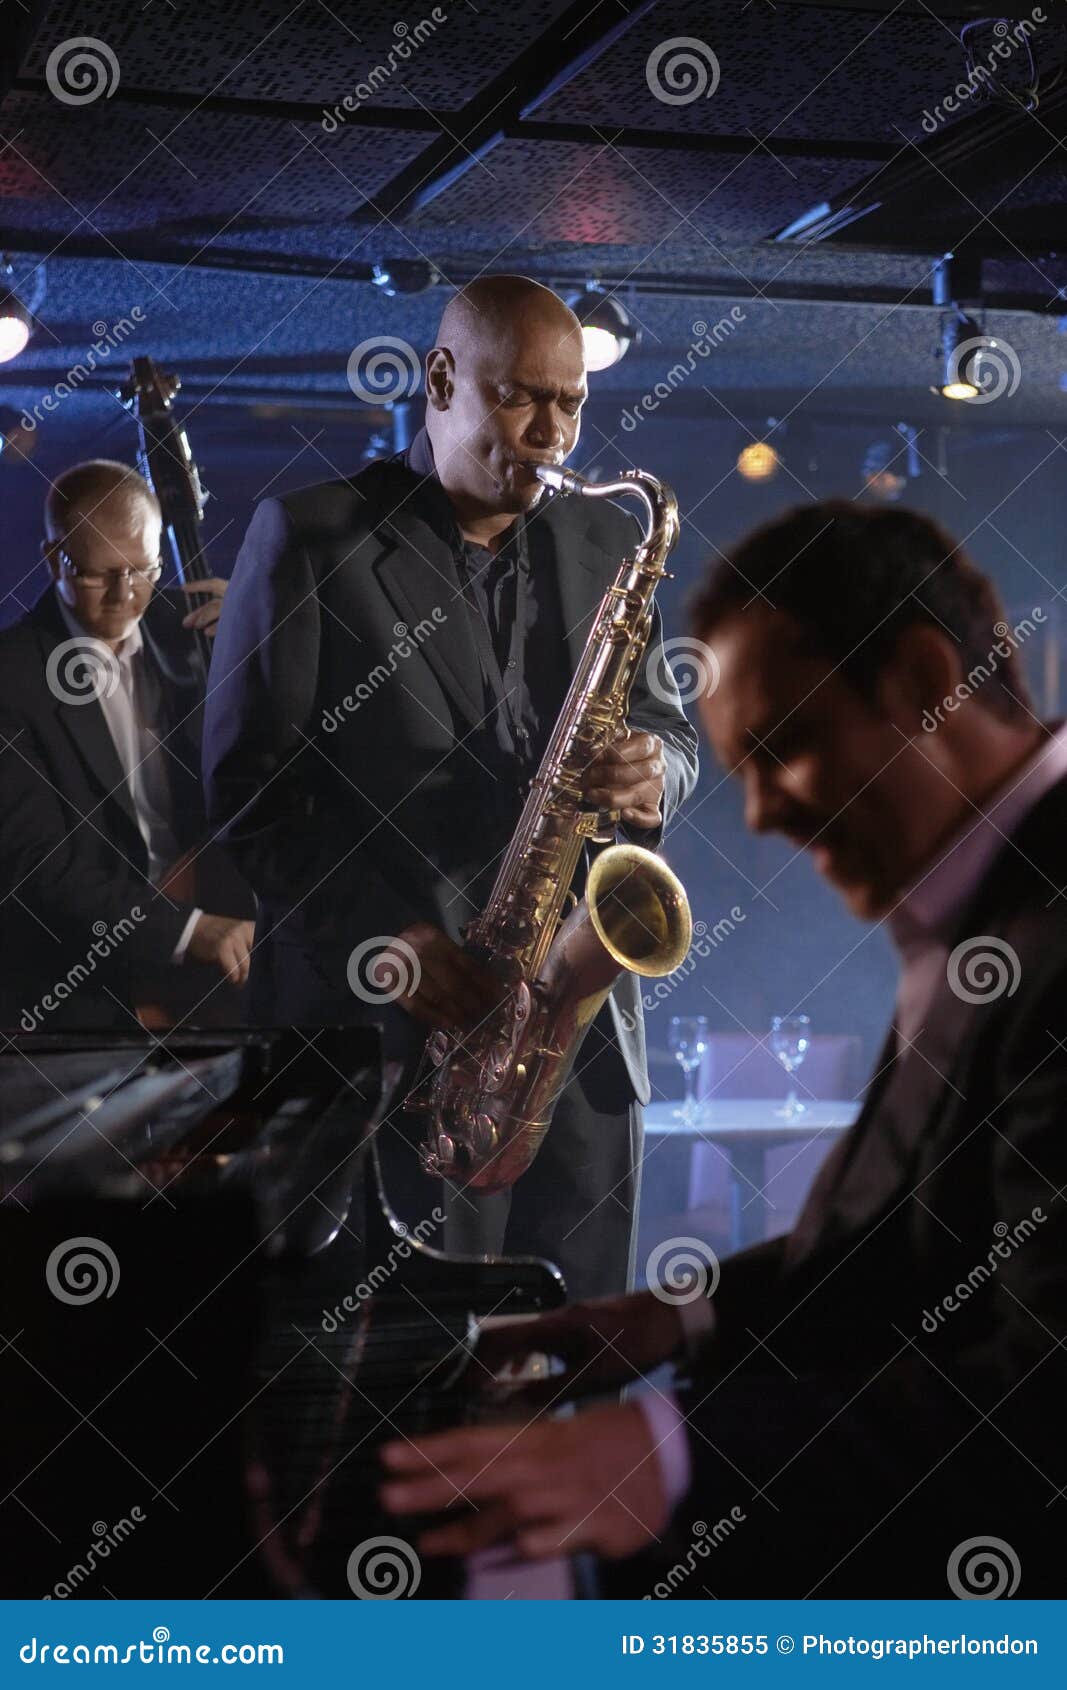 jazz musicians in club